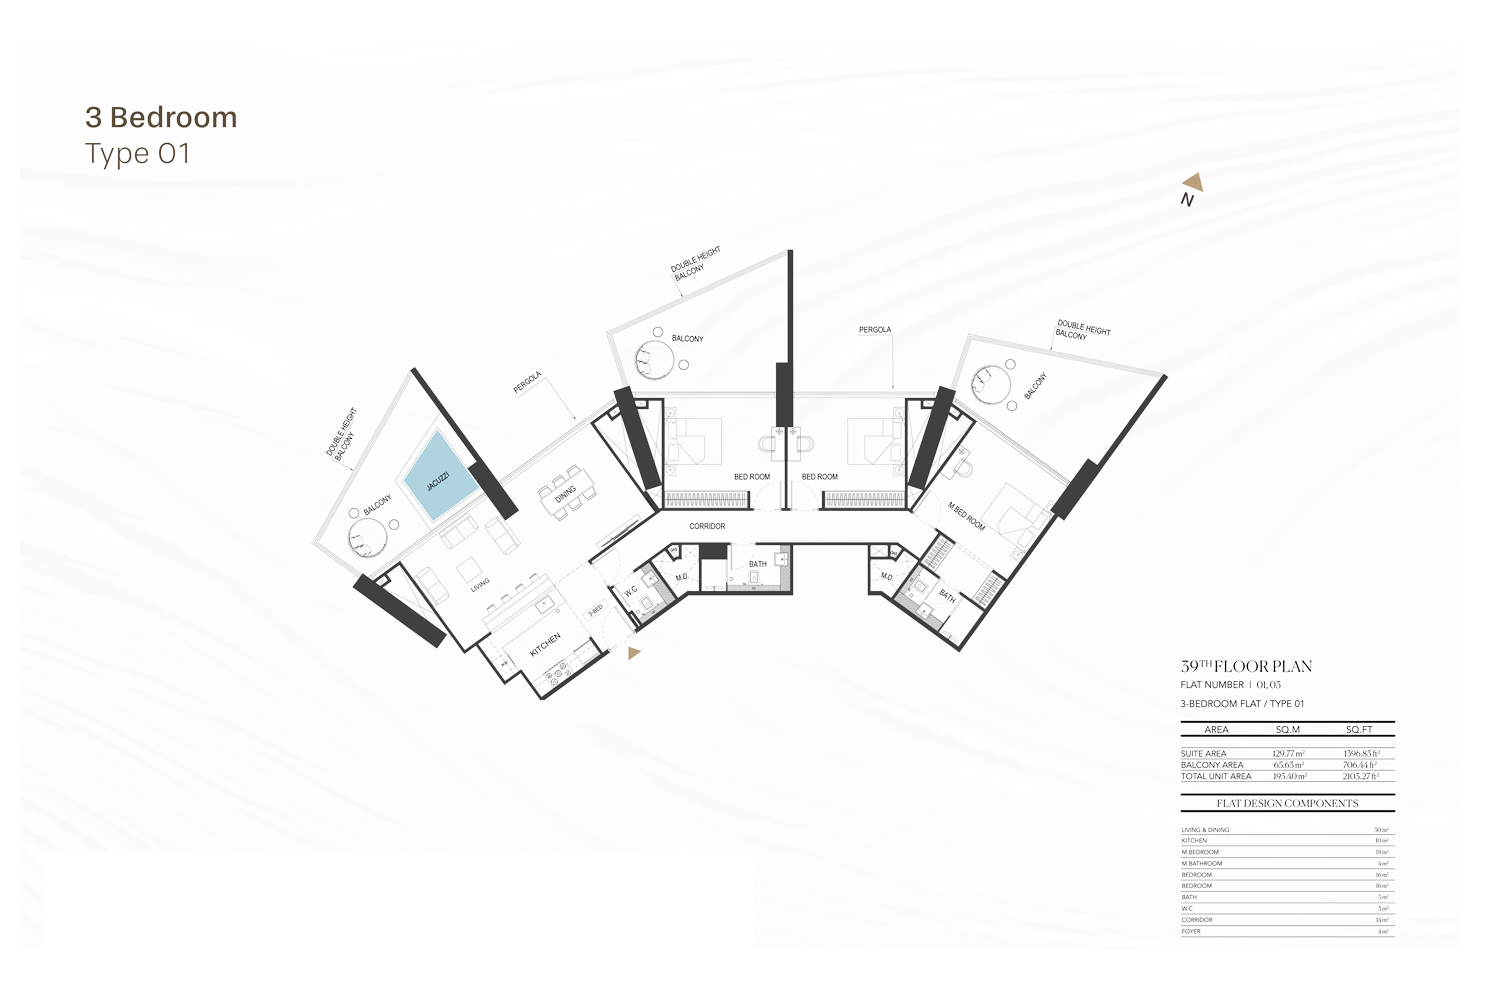 3 Bedroom Apartments Floor Plan